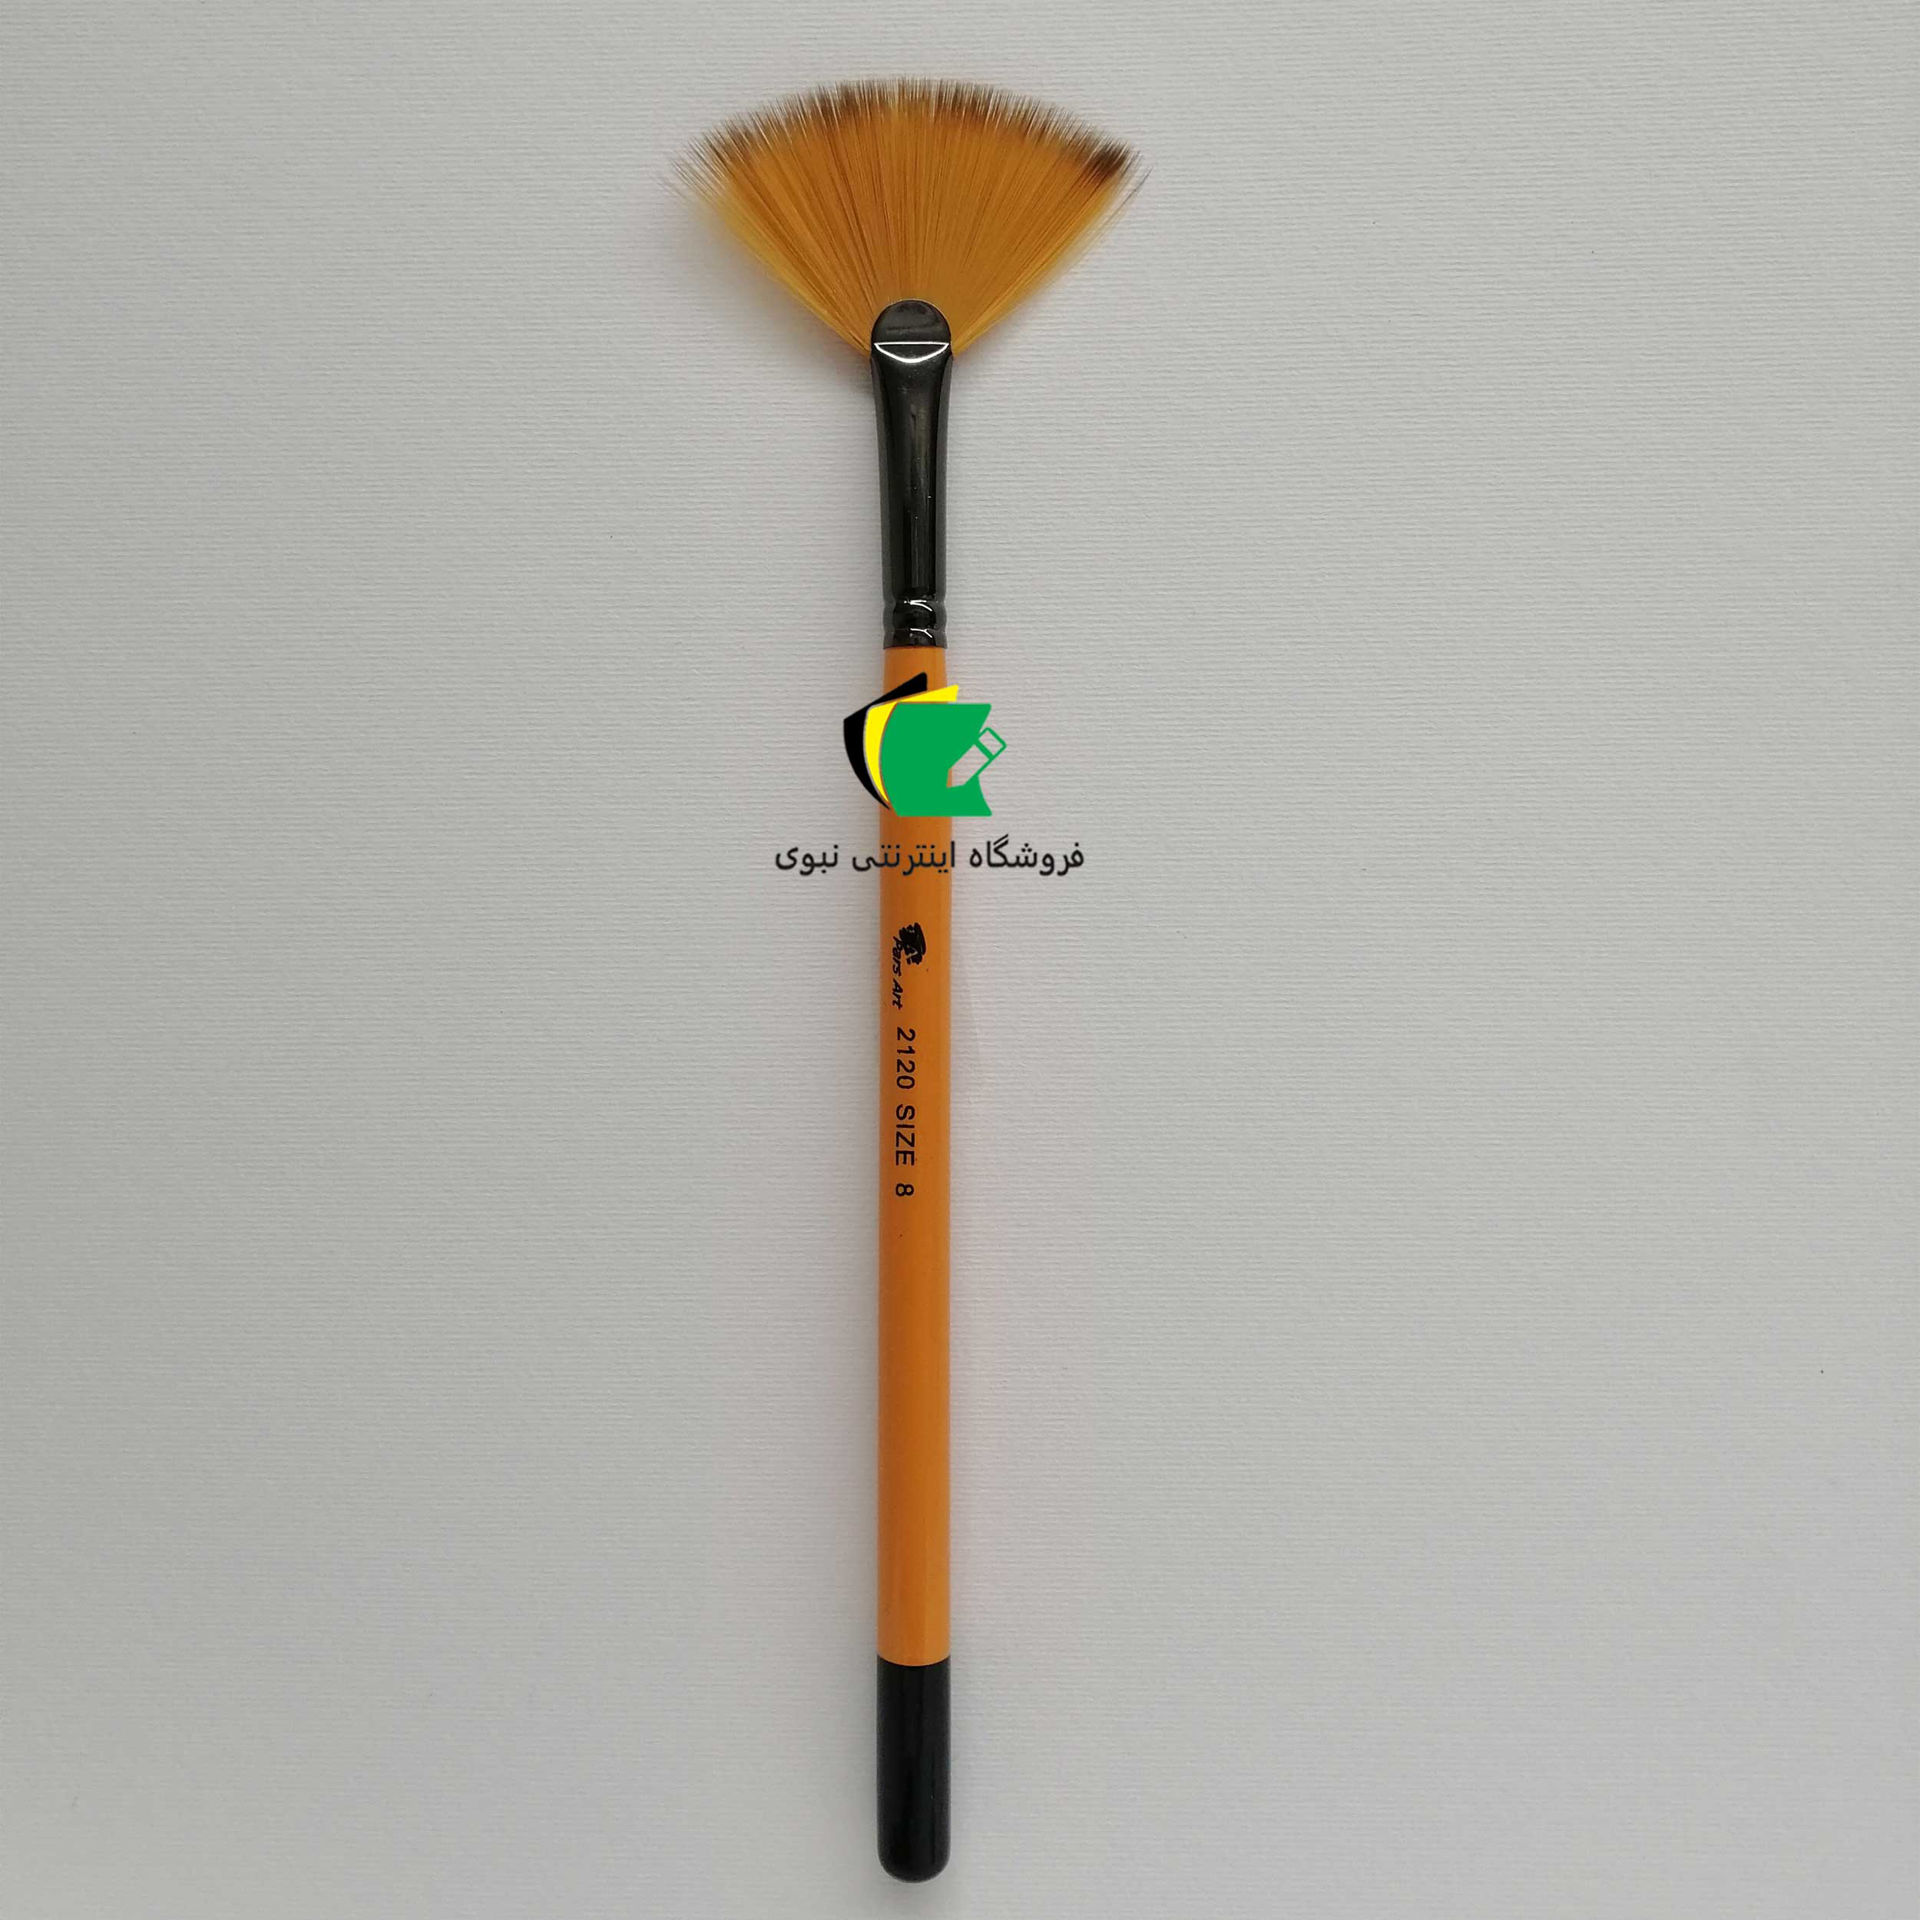 قلمو بادبزنی پارس آرت مدل قلم مو چتری پارس آرت 2120 ست 5 عددی